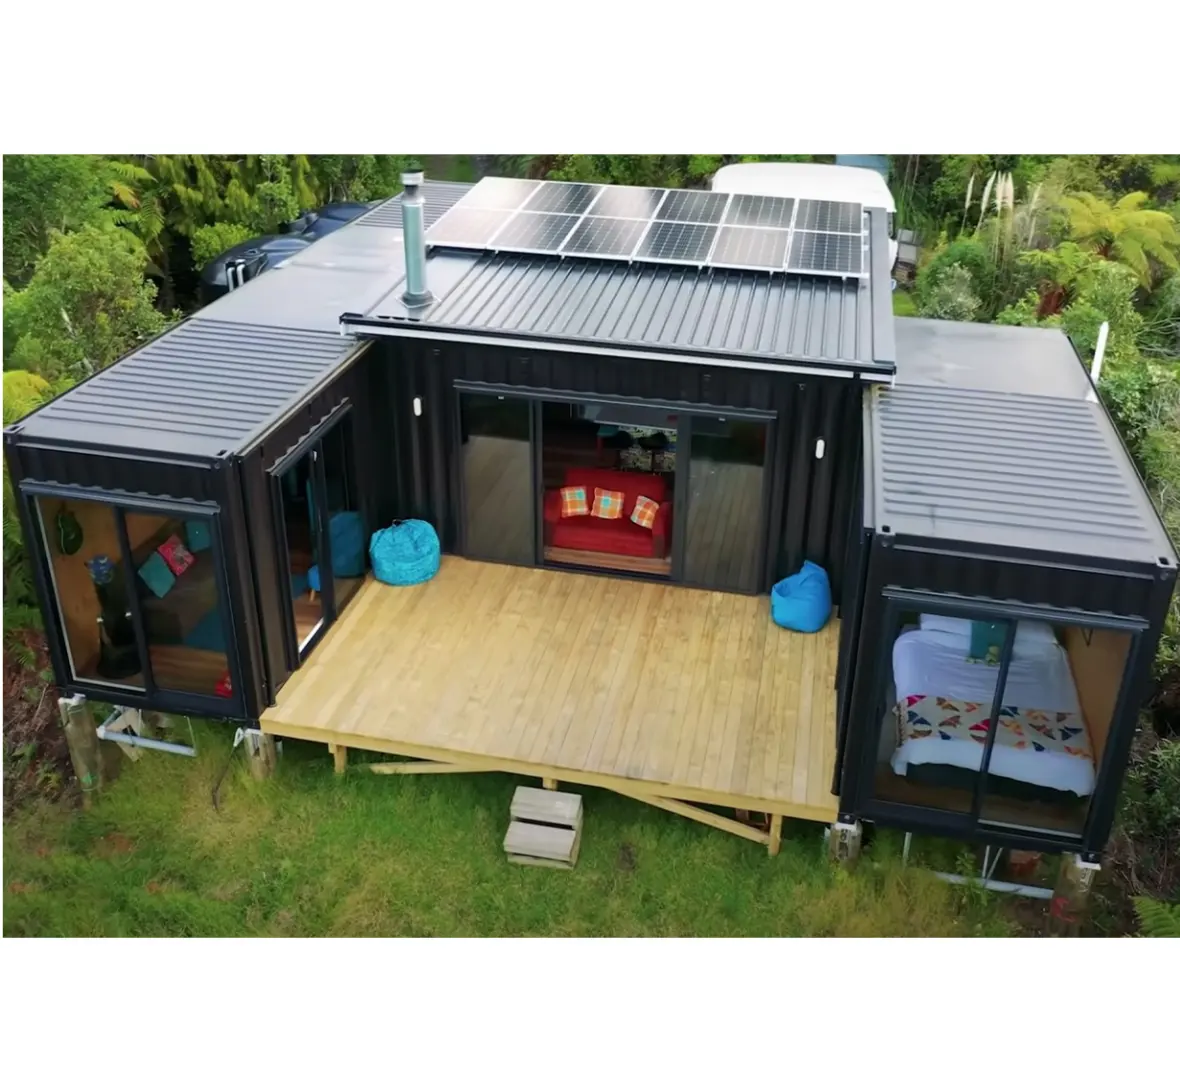 Maisons préfabriquées maisons pliables de 2 chambres à coucher maisons préfabriquées indiennes panneau solaire maison conteneur avec énergie solaire